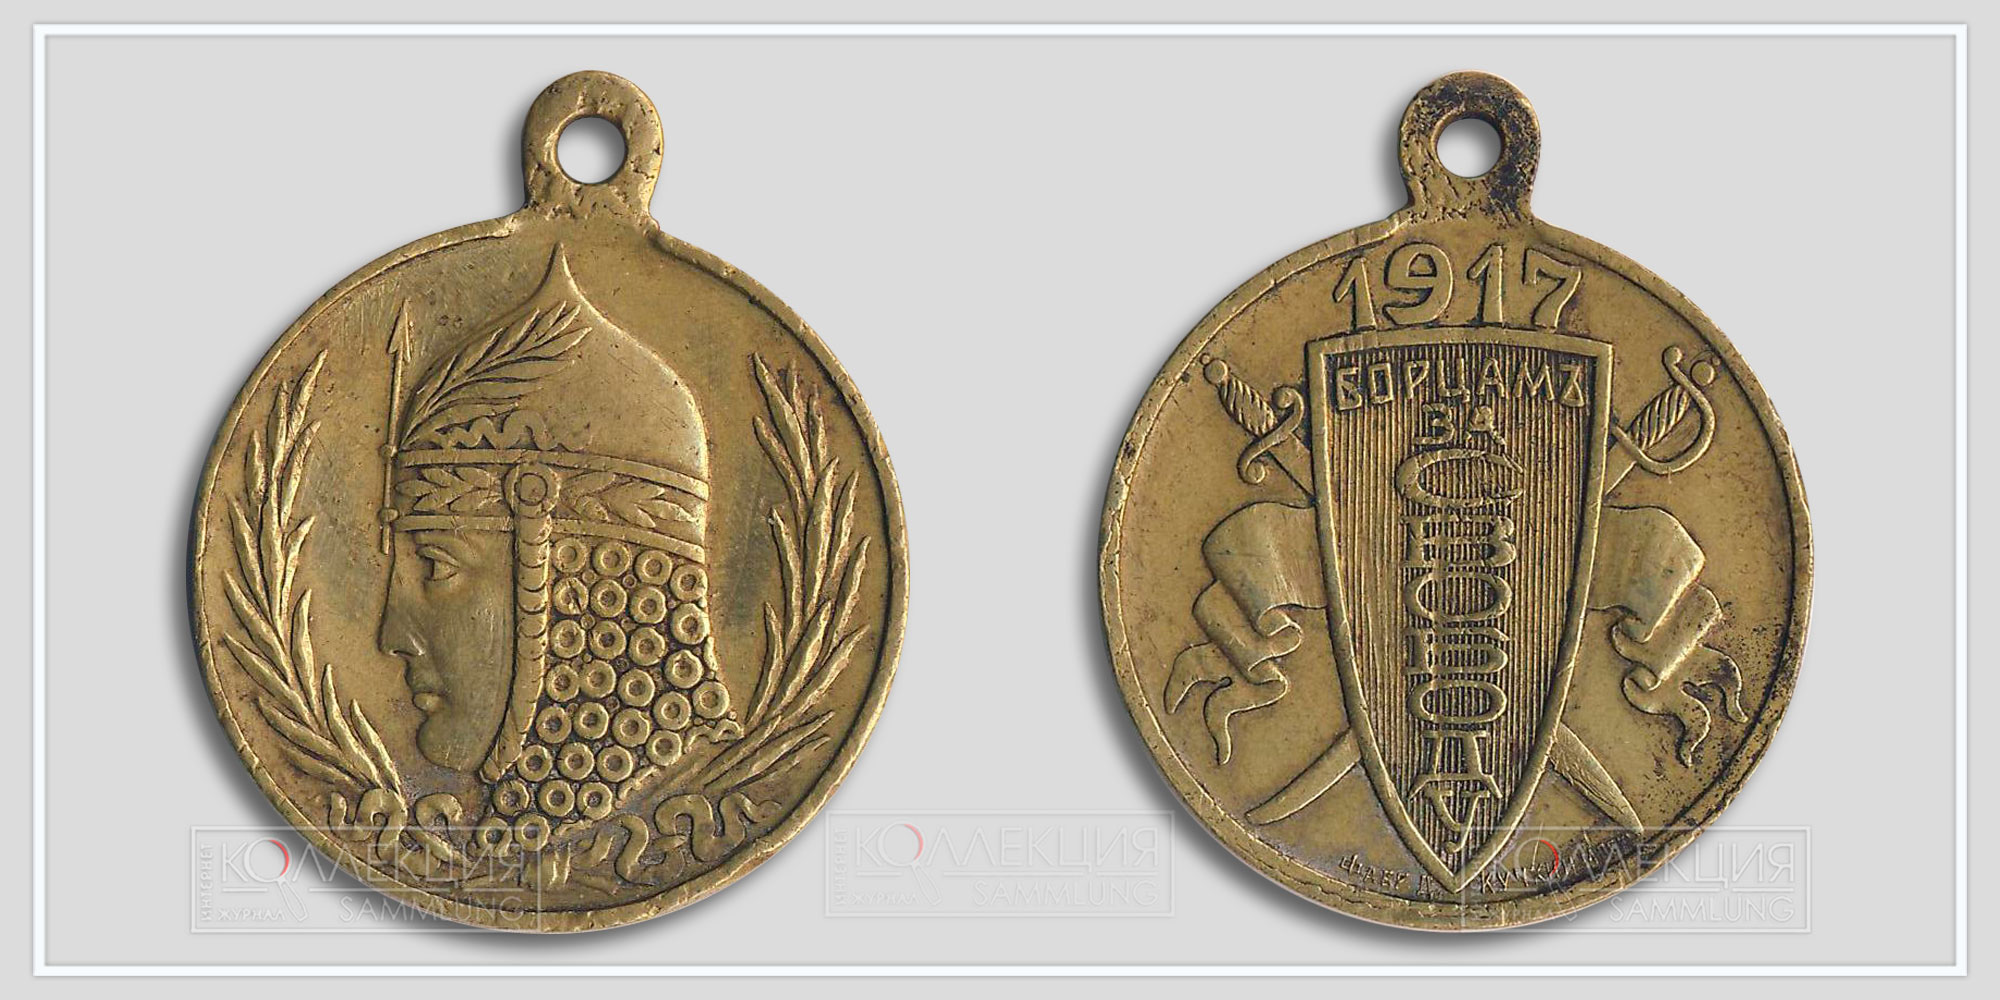 Медаль (жетон) «Борцам за свободу» 1917 Временное правительство (Из архива Фалеристика.инфо. Разместил коллега s_m_s)